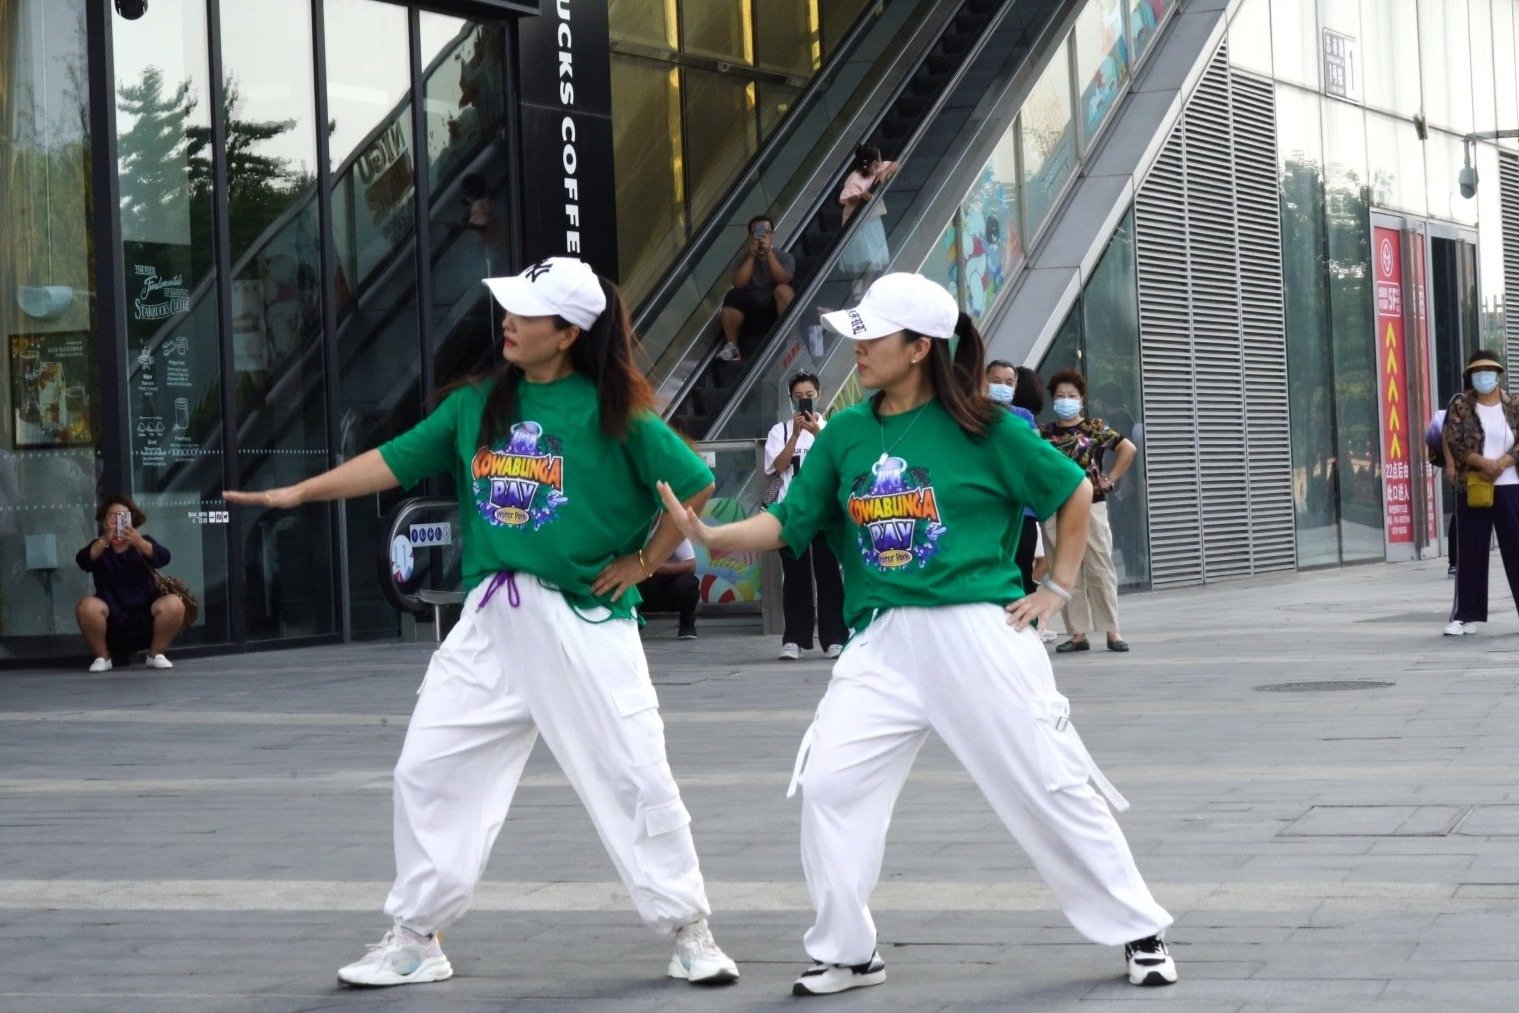 【北京星舞团-流行舞蹈培训】BLACKPINK - 像最后一样 课堂视频 第二版_哔哩哔哩 (゜-゜)つロ 干杯~-bilibili